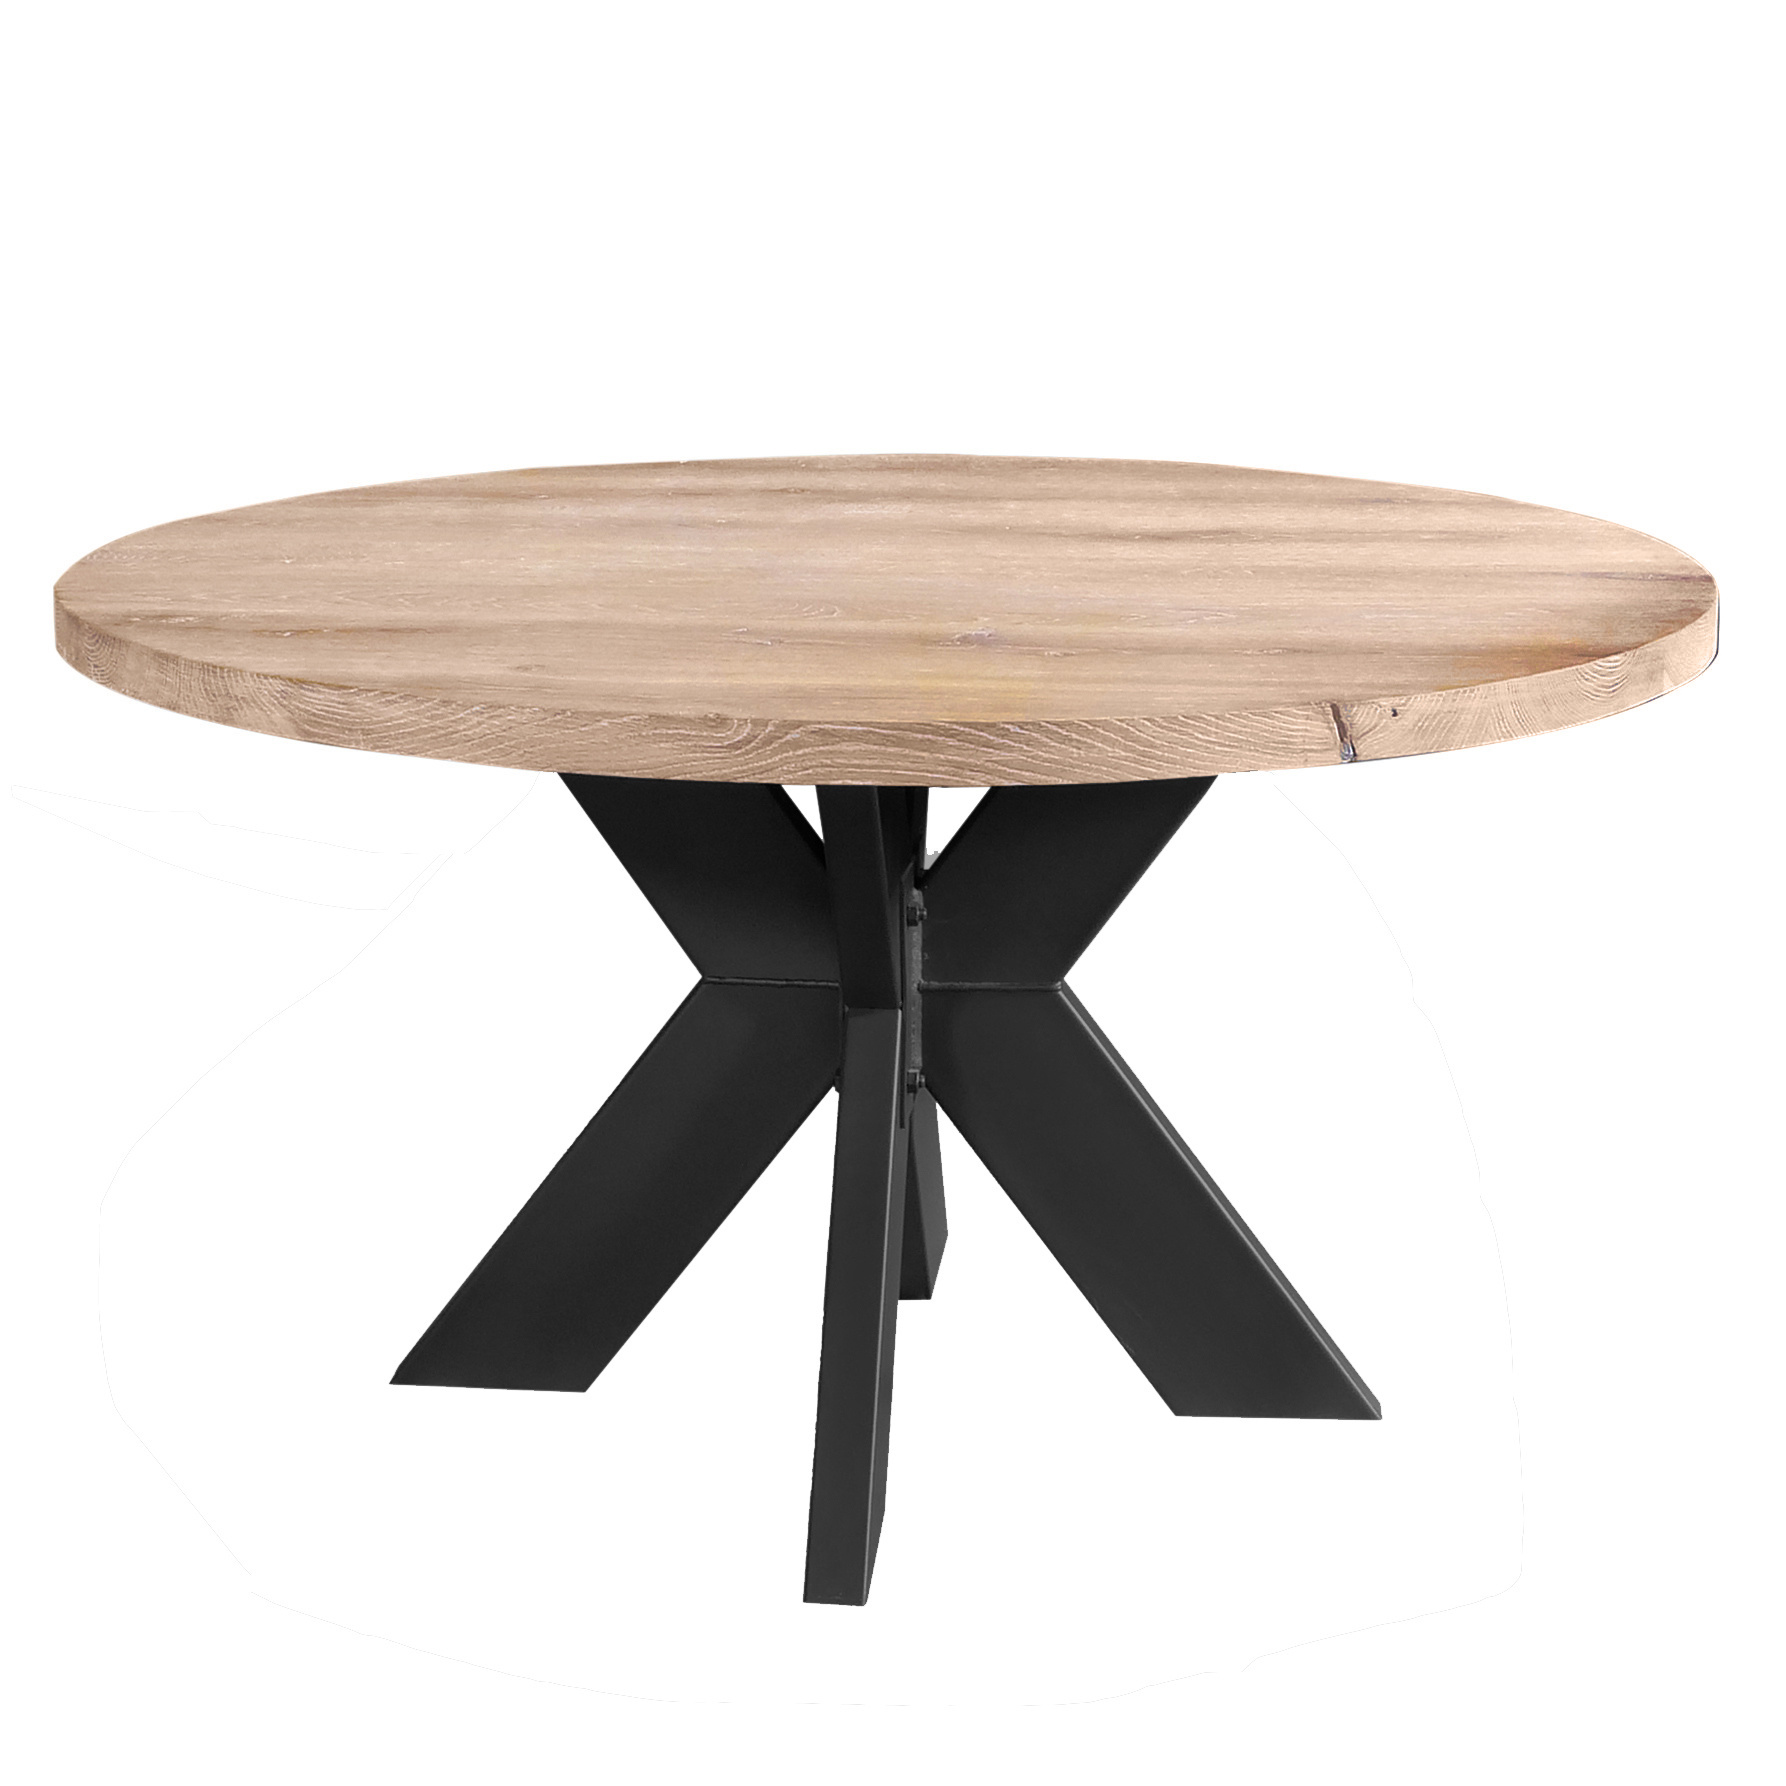  Tischplatte Eiche rund nach Maß - 6 cm dick (2-lagig) - Eichenholz A-Qualität - Durchmesser: 30 - 180 cm - Eiche Tischplatte rund massiv - verleimt & künstlich getrocknet (HF 8-12%)